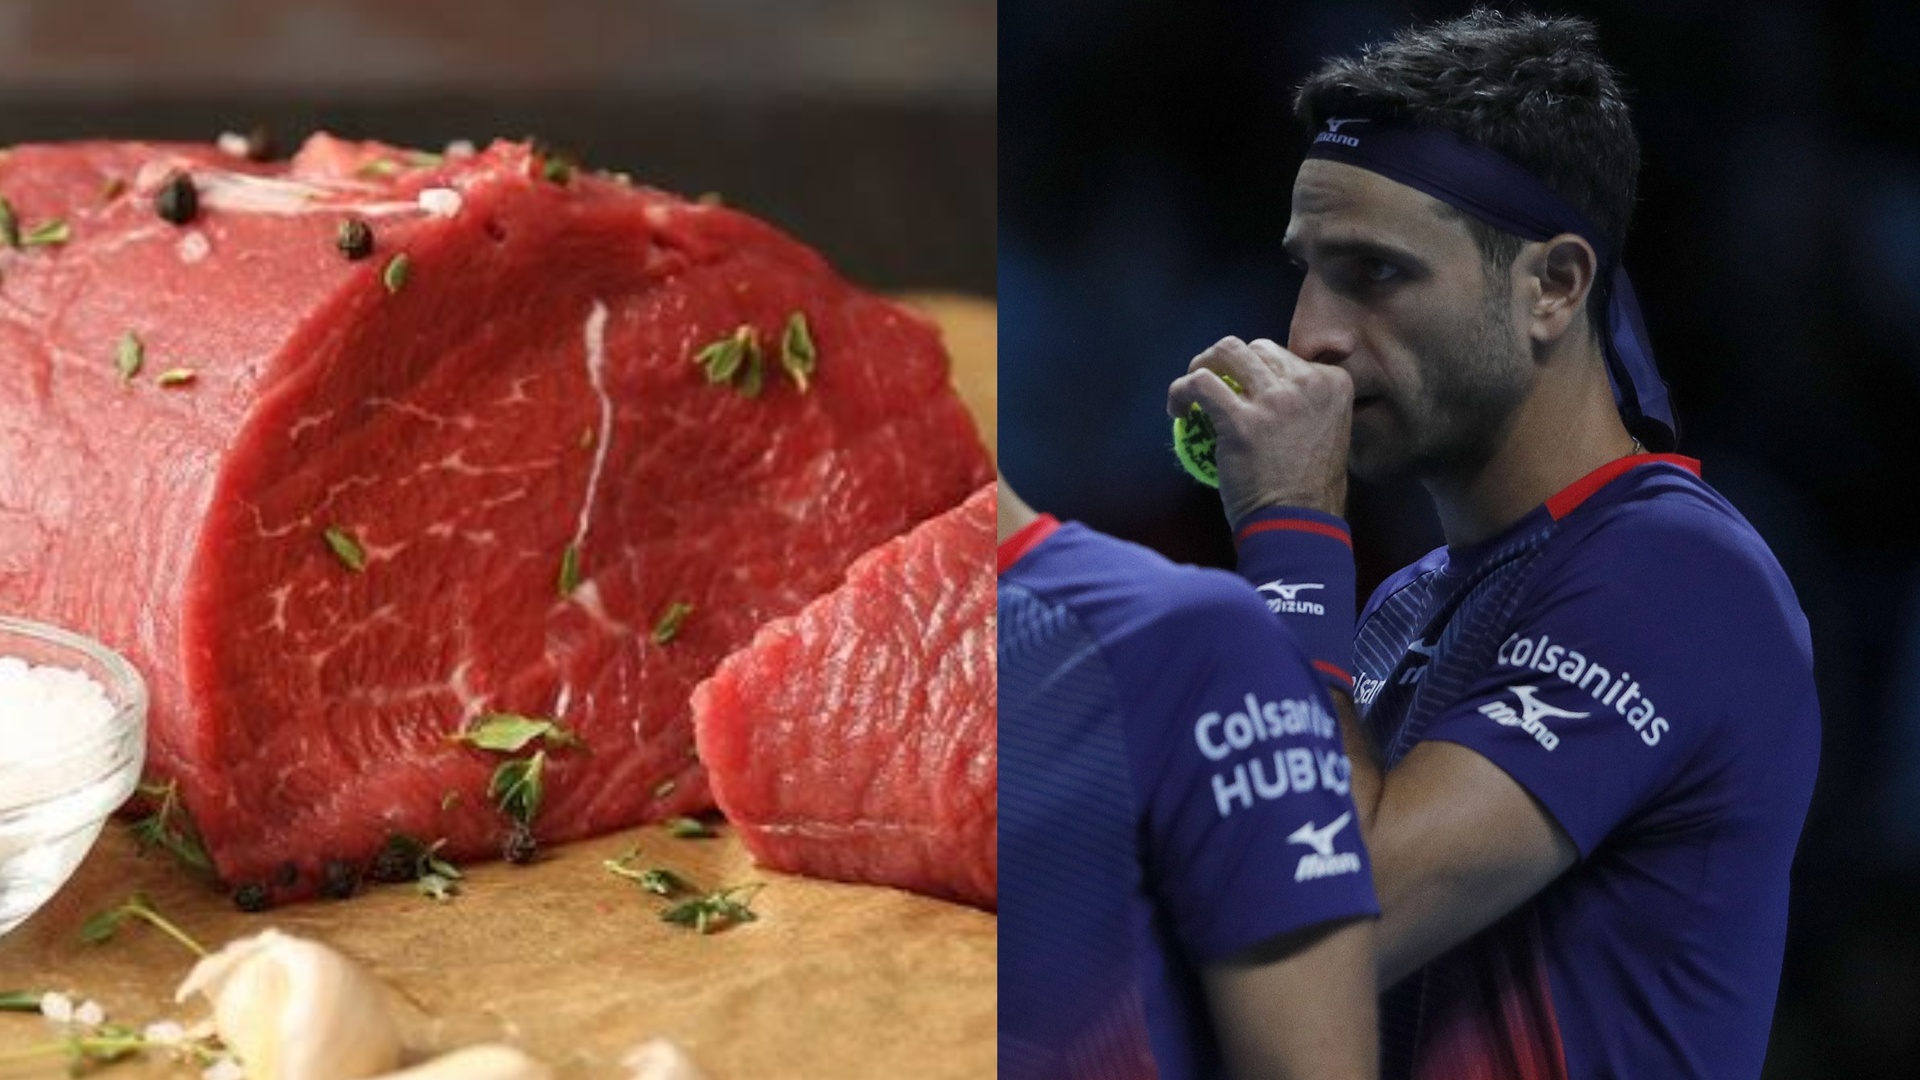 اللحم الكولومبي ينقذ لاعب تنس من تهمة المنشطات